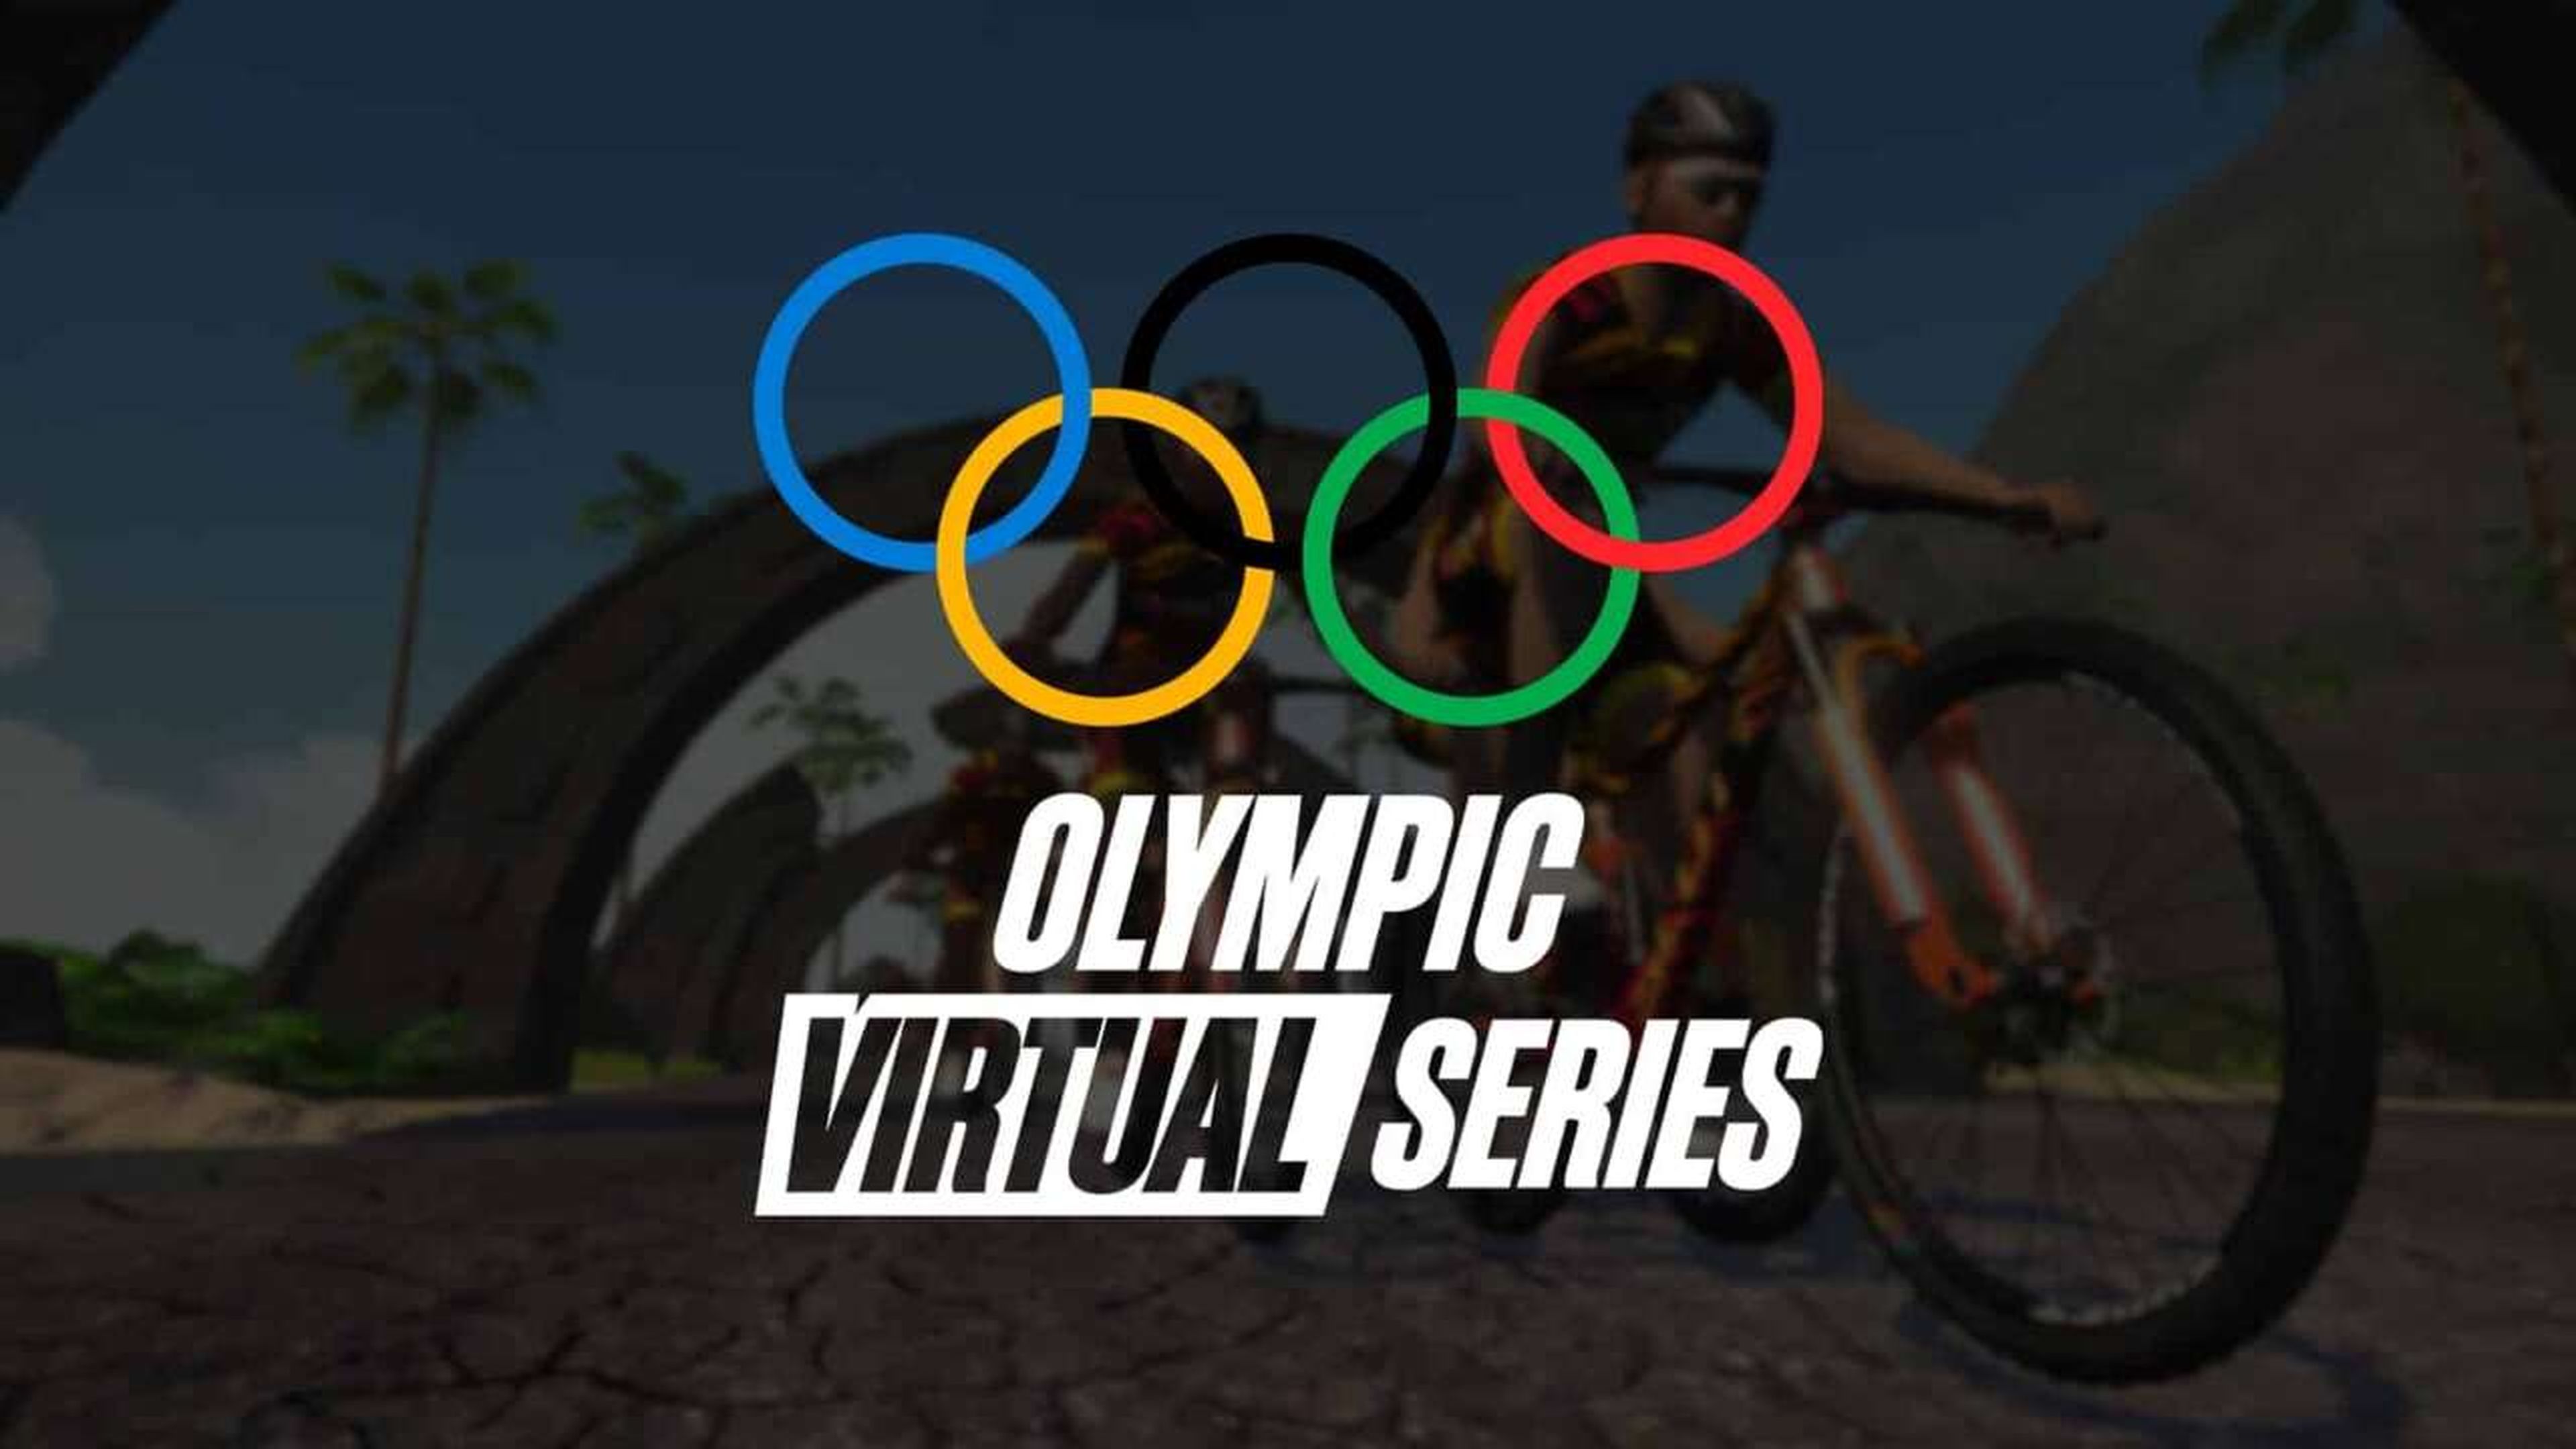 Serie Olímpica Virtual